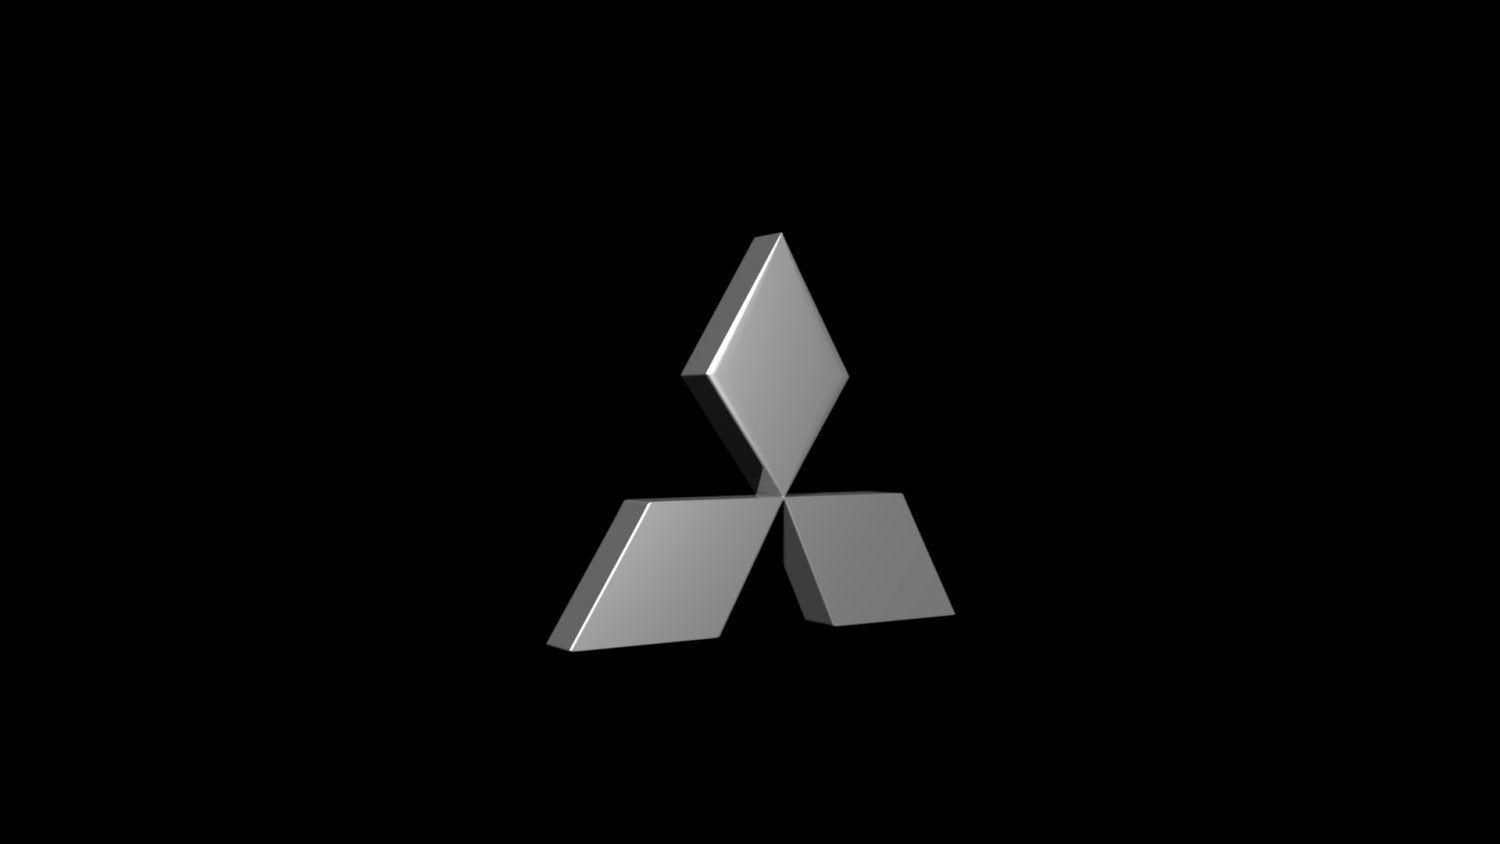 Black and Mitsubishi Logo - Mitsubishi Emblem Free 3D Model in Cart 3DExport